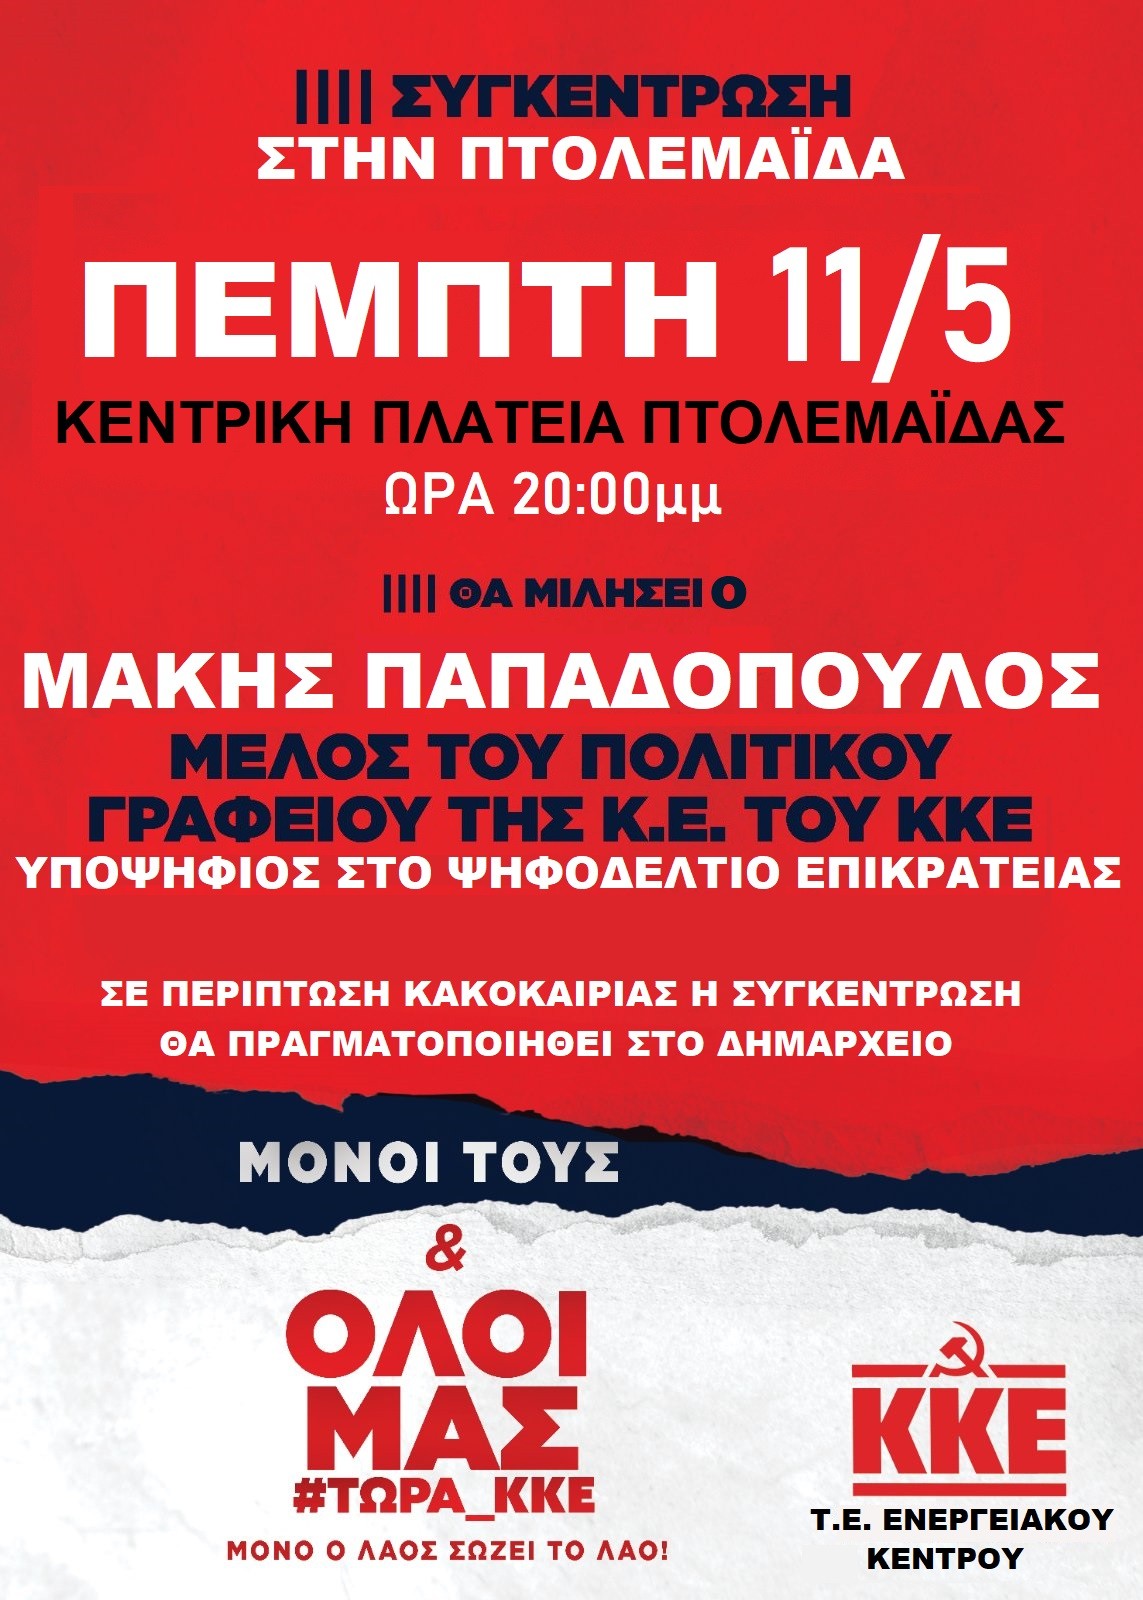 Σήμερα Πέμπτη 11/5, στις 8 μ.μ., θα γίνει η προεκλογική συγκέντρωση του ΚΚΕ στην κεντρική πλατεία Πτολεμαίδας